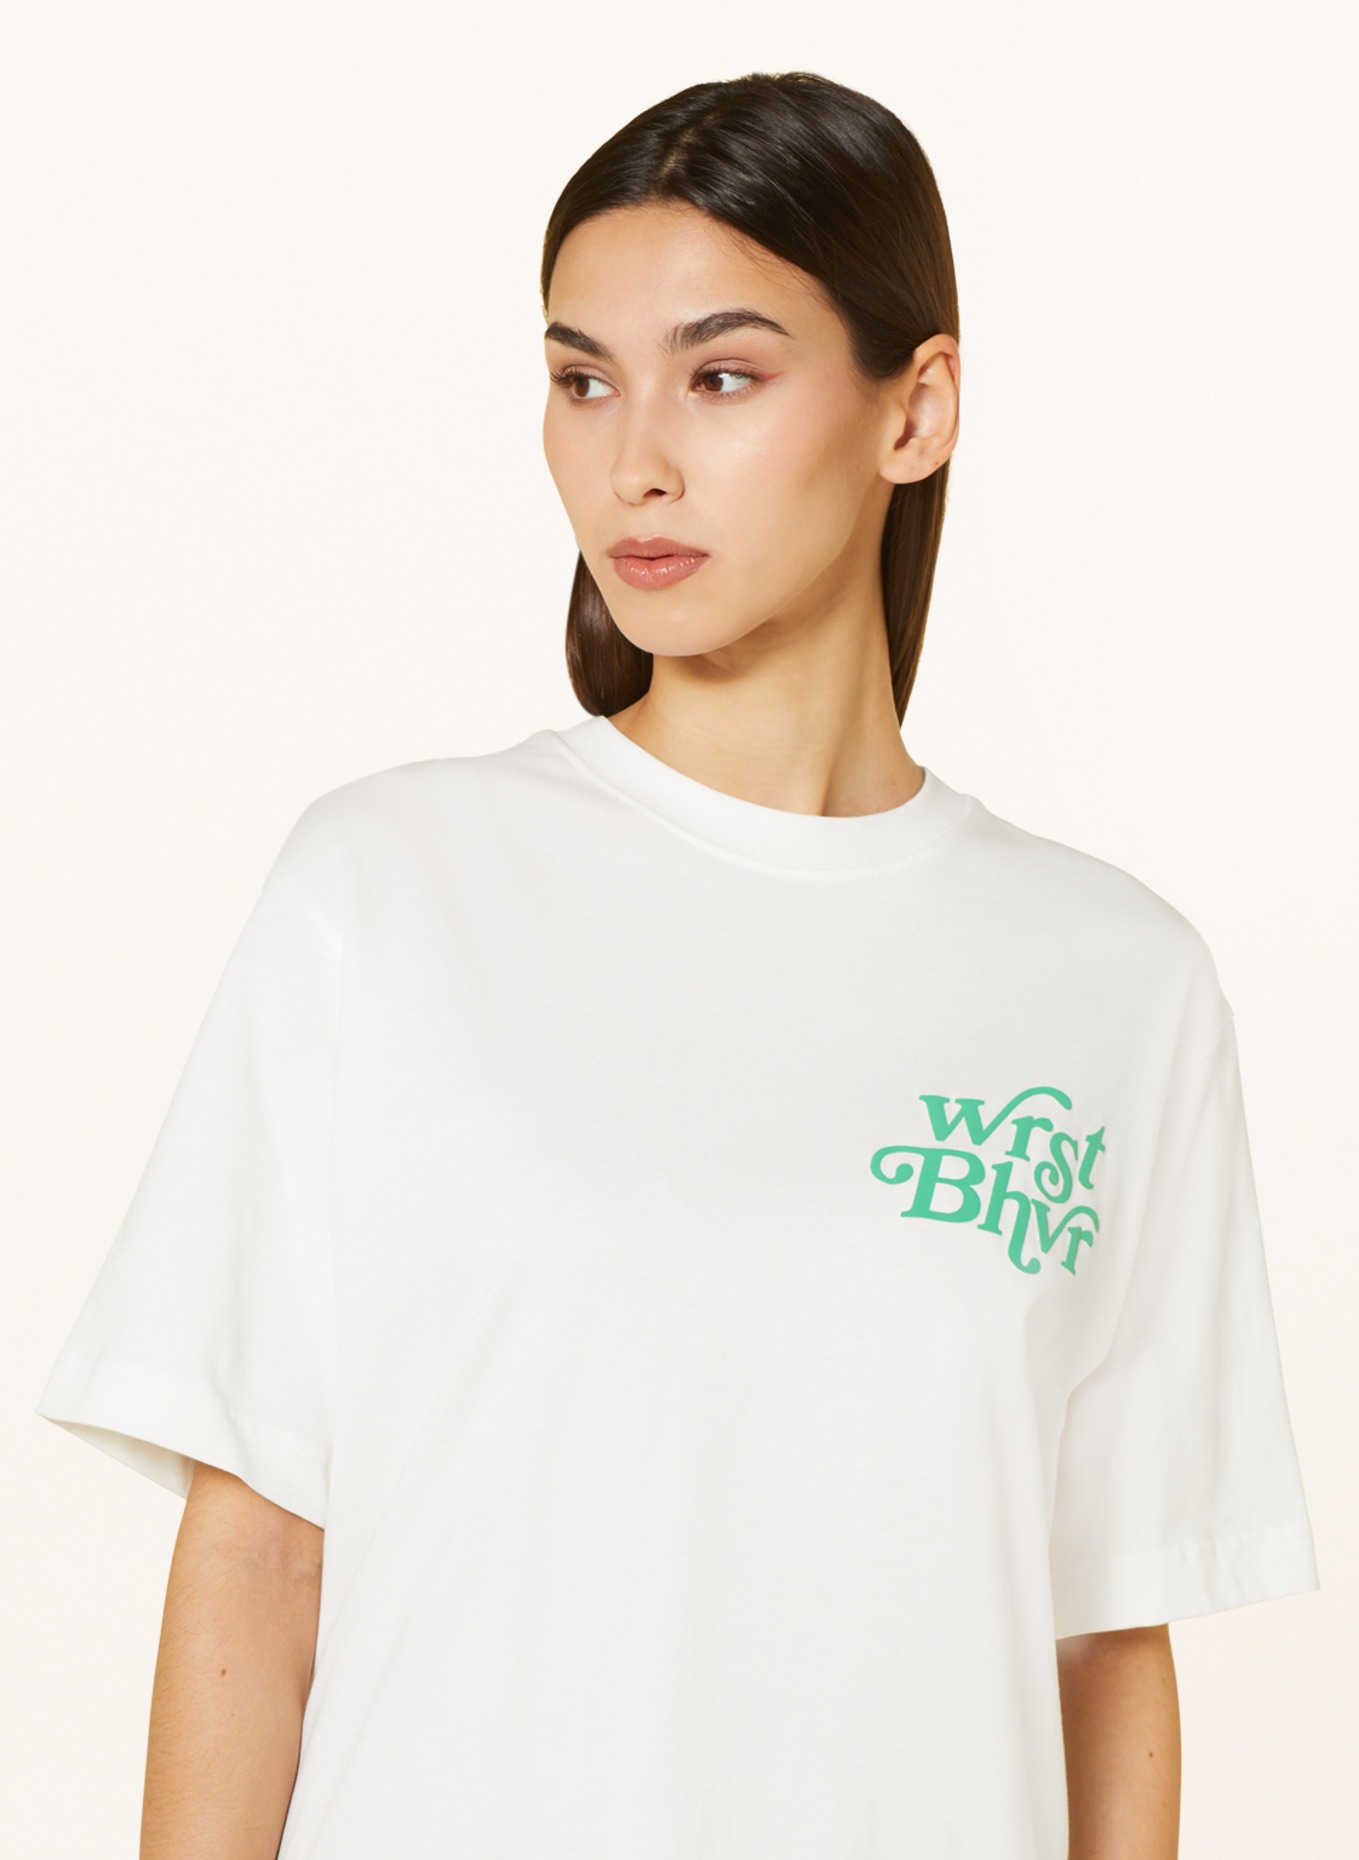 WRSTBHVR T-shirt CANY, Color: WHITE (Image 4)